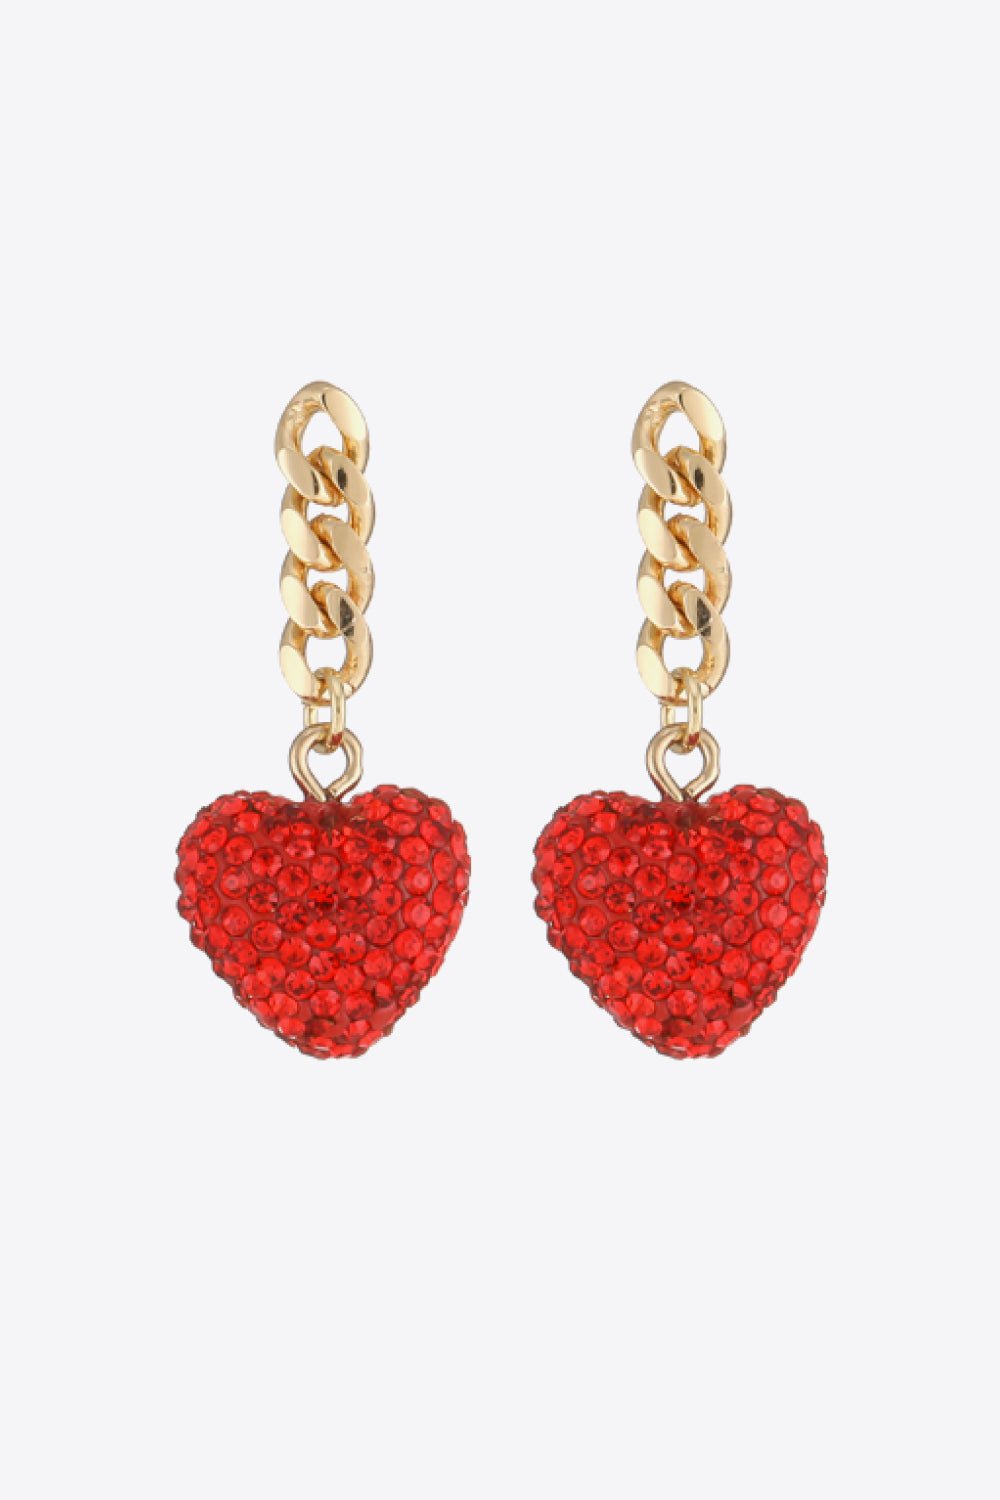 Rhinestone Heart Chain Drop Earrings - BloomBliss.com